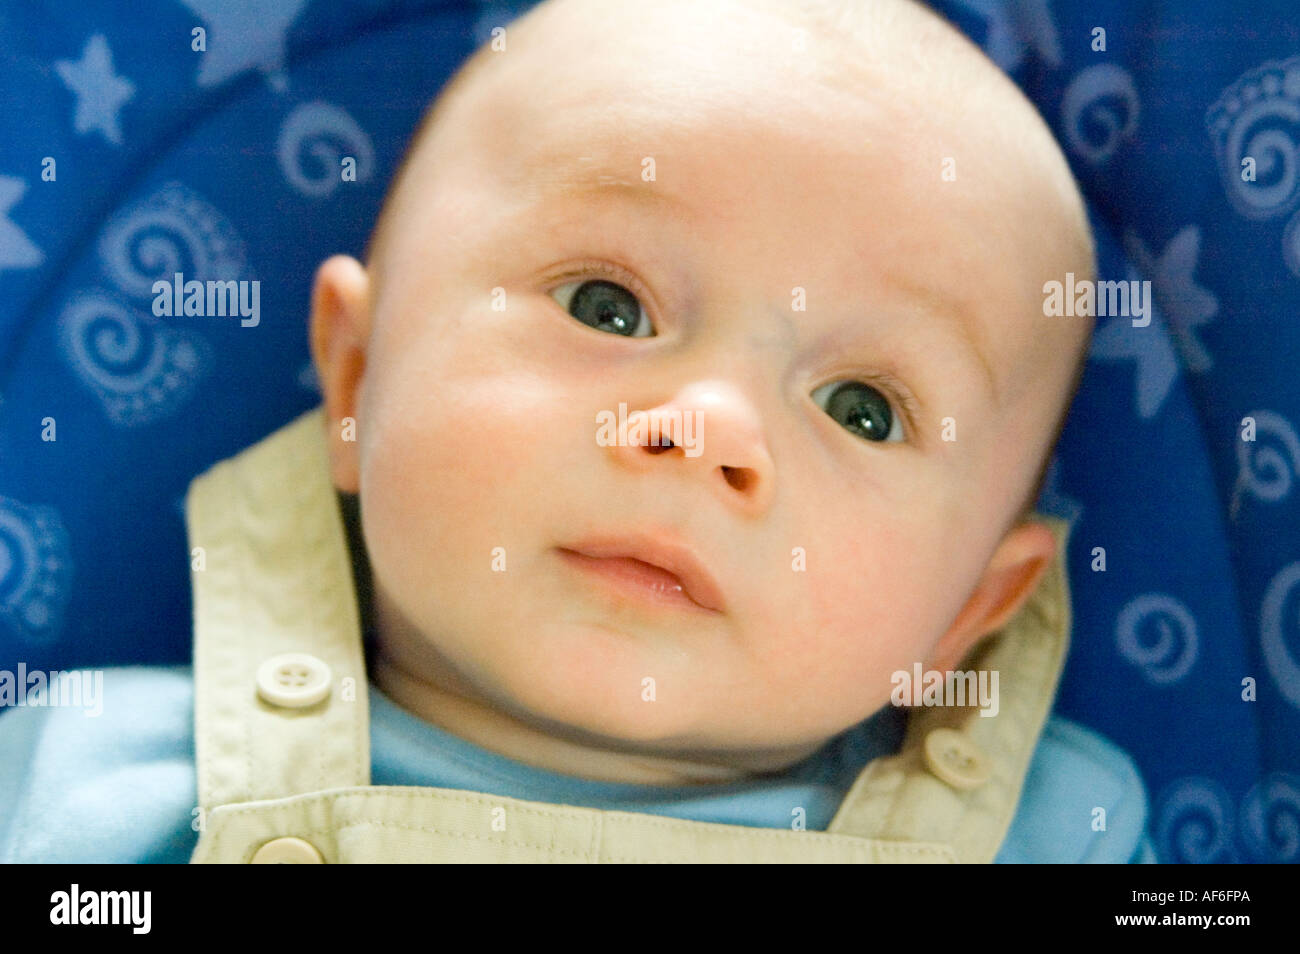 Cierre Horizontal en vertical de caucásico Baby Boy es un rostro angelical. Foto de stock